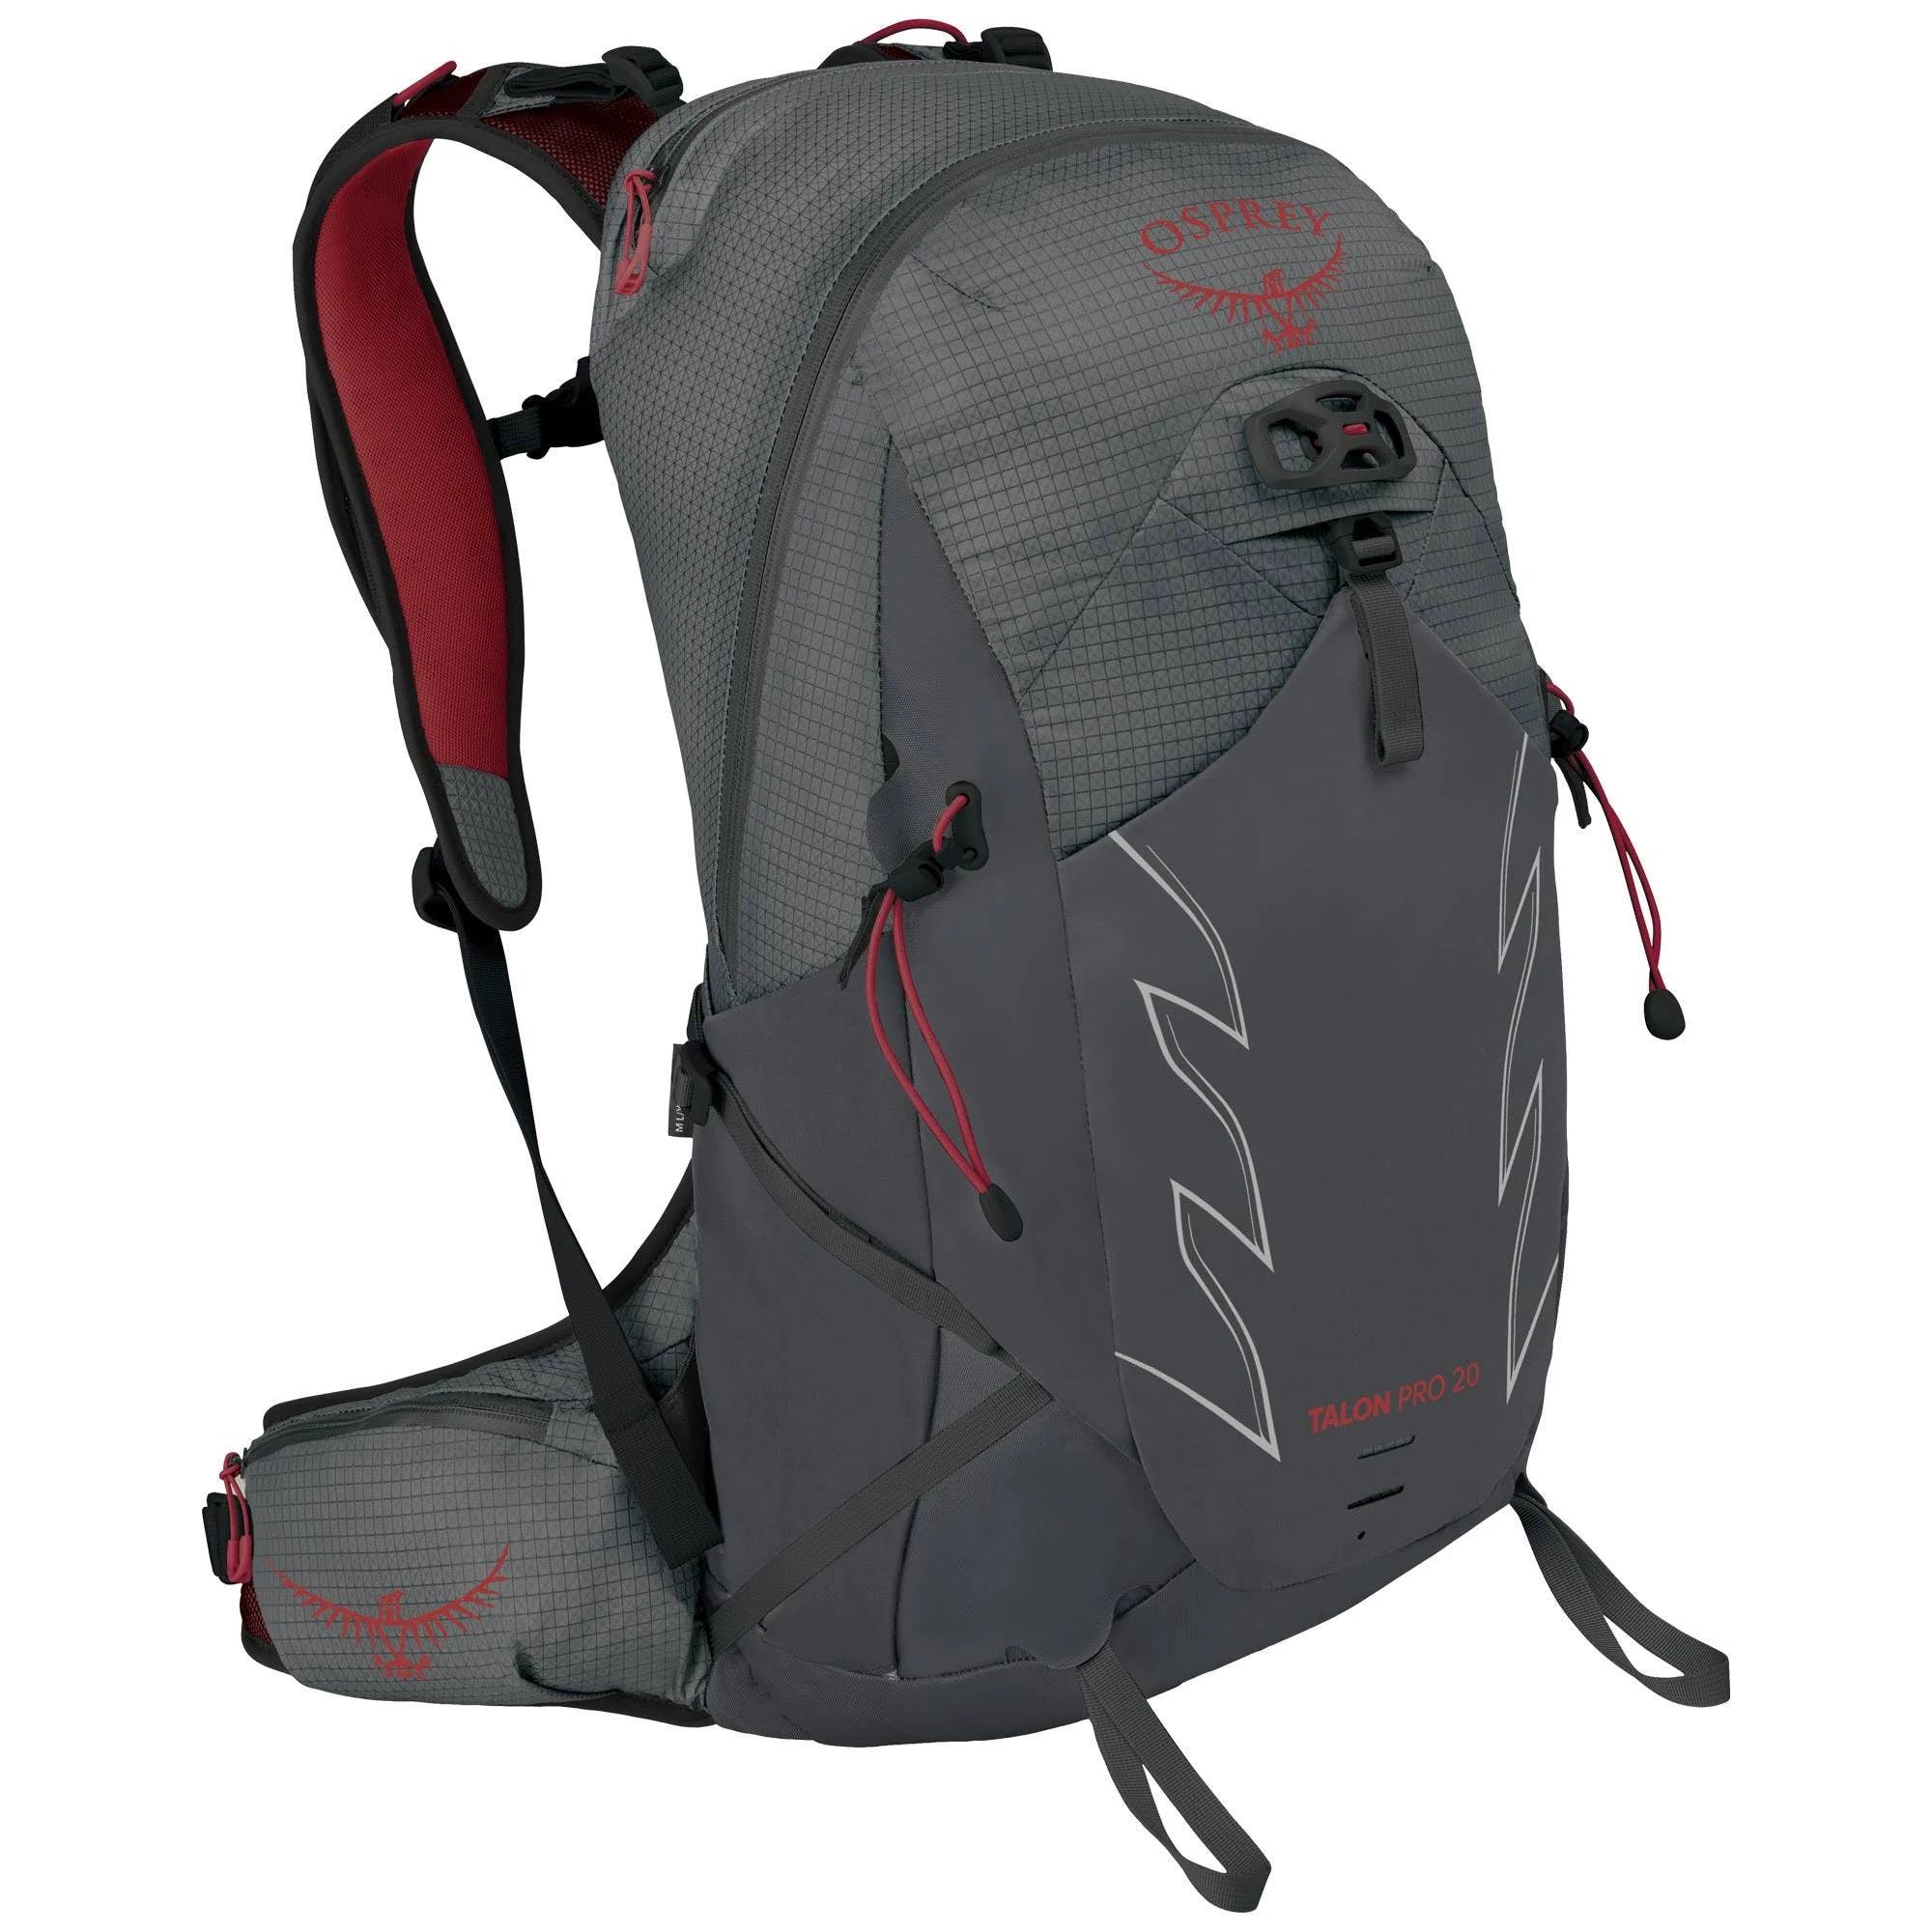 Osprey Talon Pro 20 Backpack